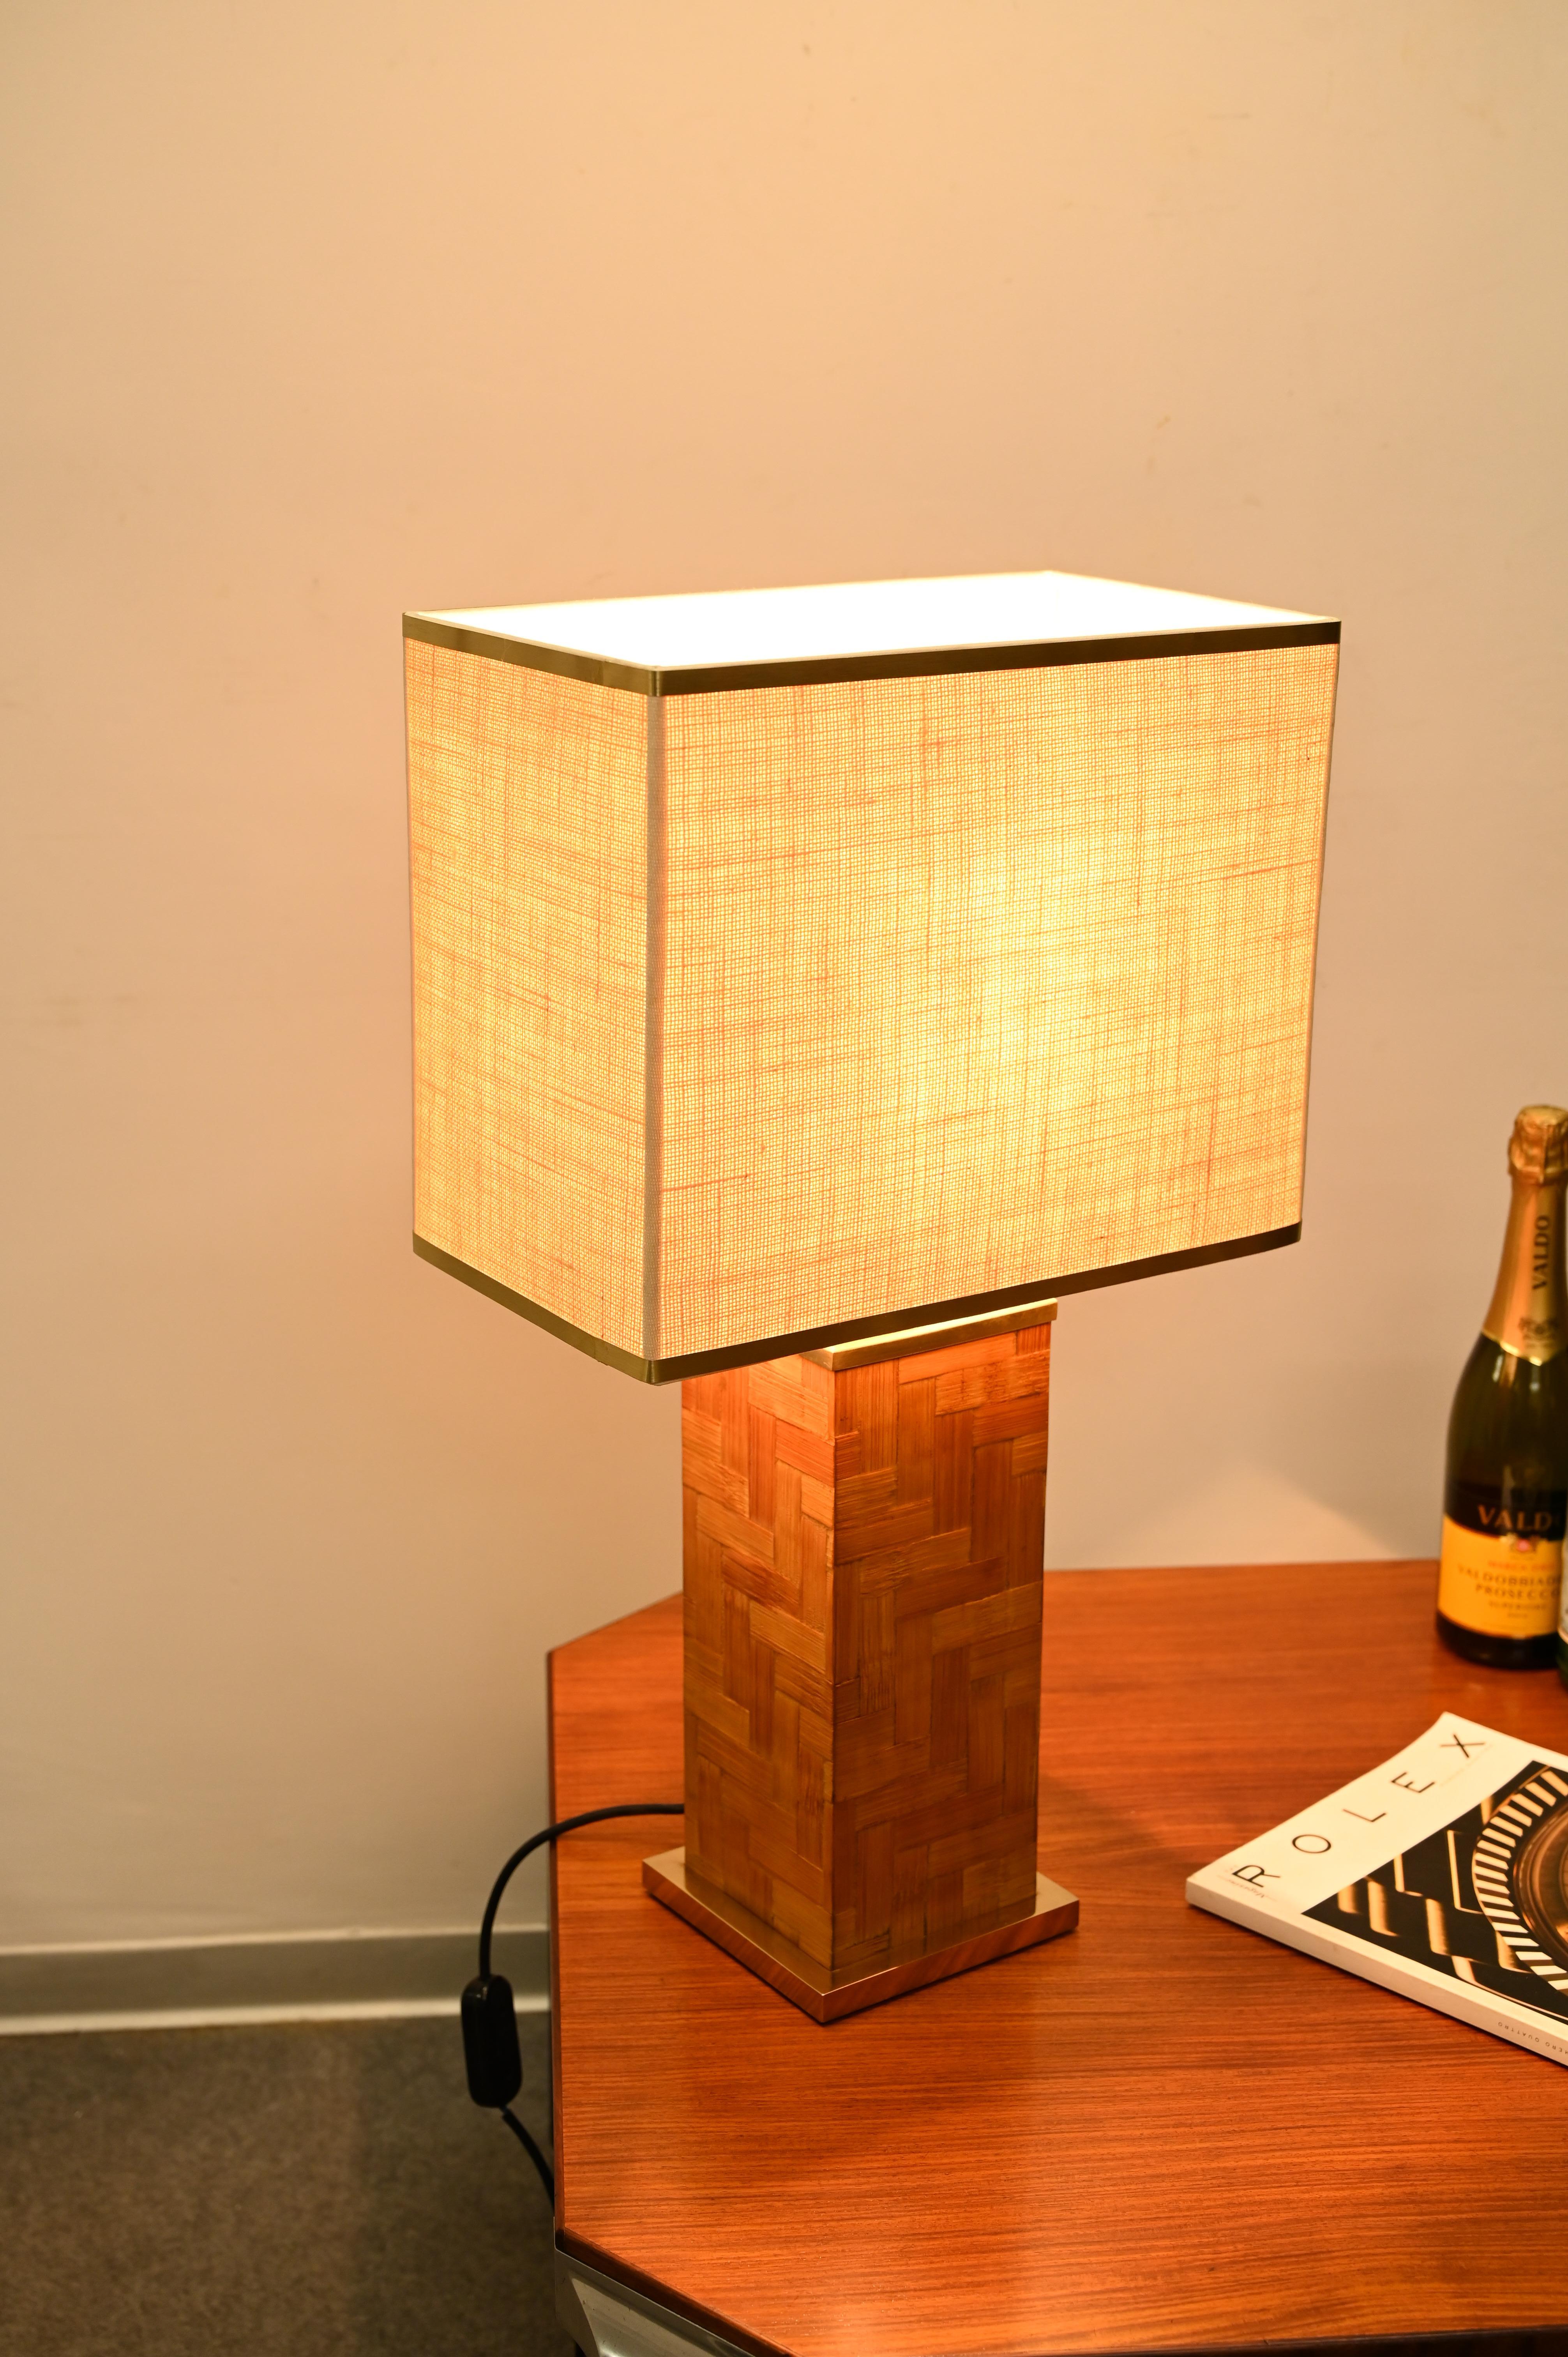 Wunderschöne quadratische Tischlampe aus Messing und Rattan, die in hervorragender Verarbeitung hergestellt wurde. Die wunderschöne Lampe wurde in den 1970er Jahren von Tommaso Barbi in Italien hergestellt.

Die Lampe hat einen quadratischen Sockel